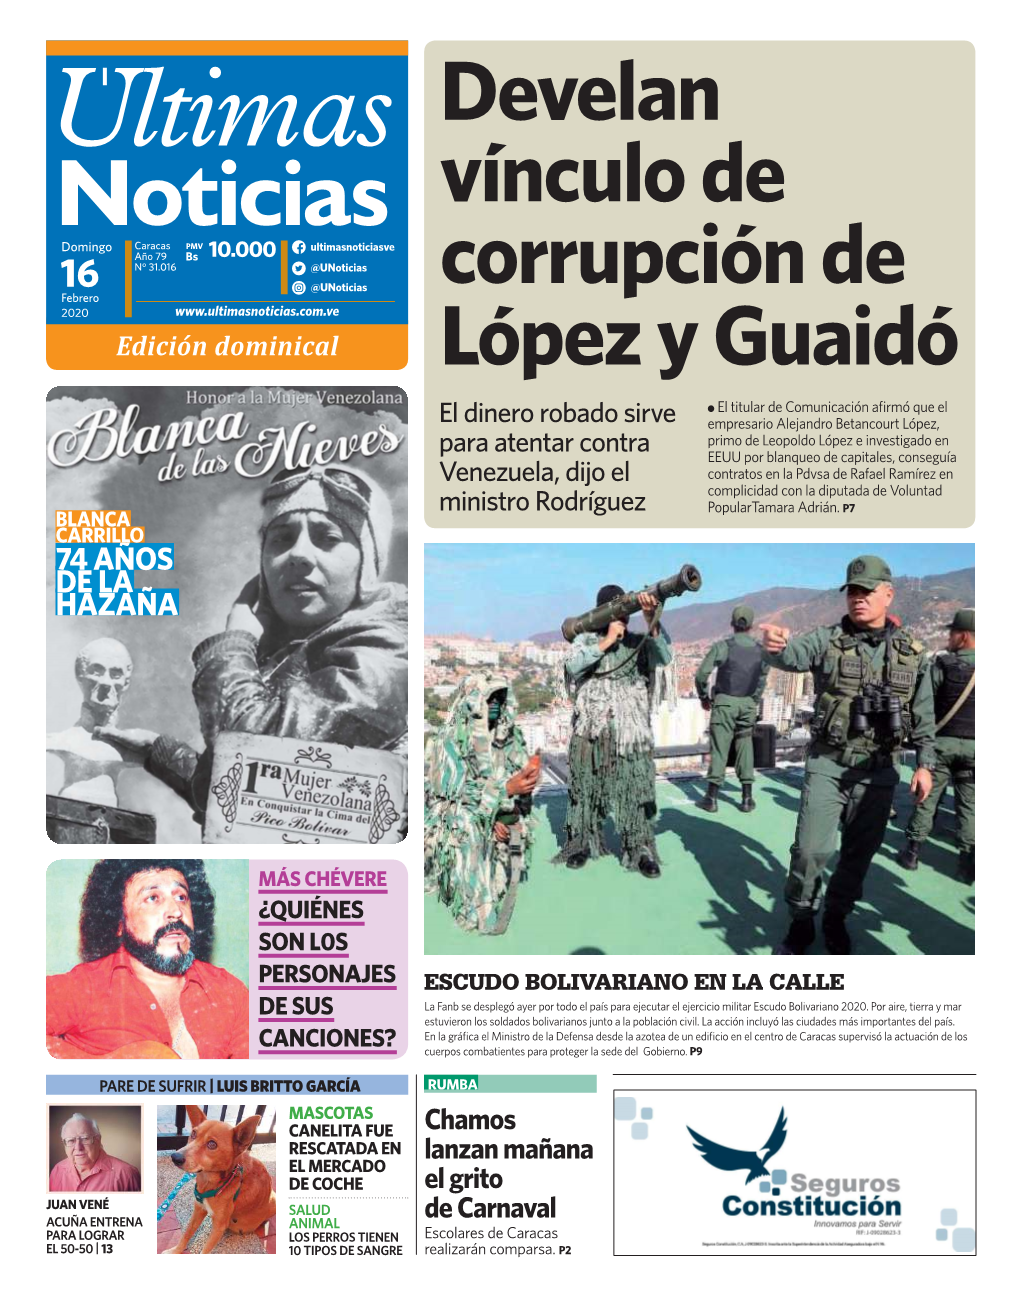 Develan Vínculo De Corrupción De López Y Guaidó